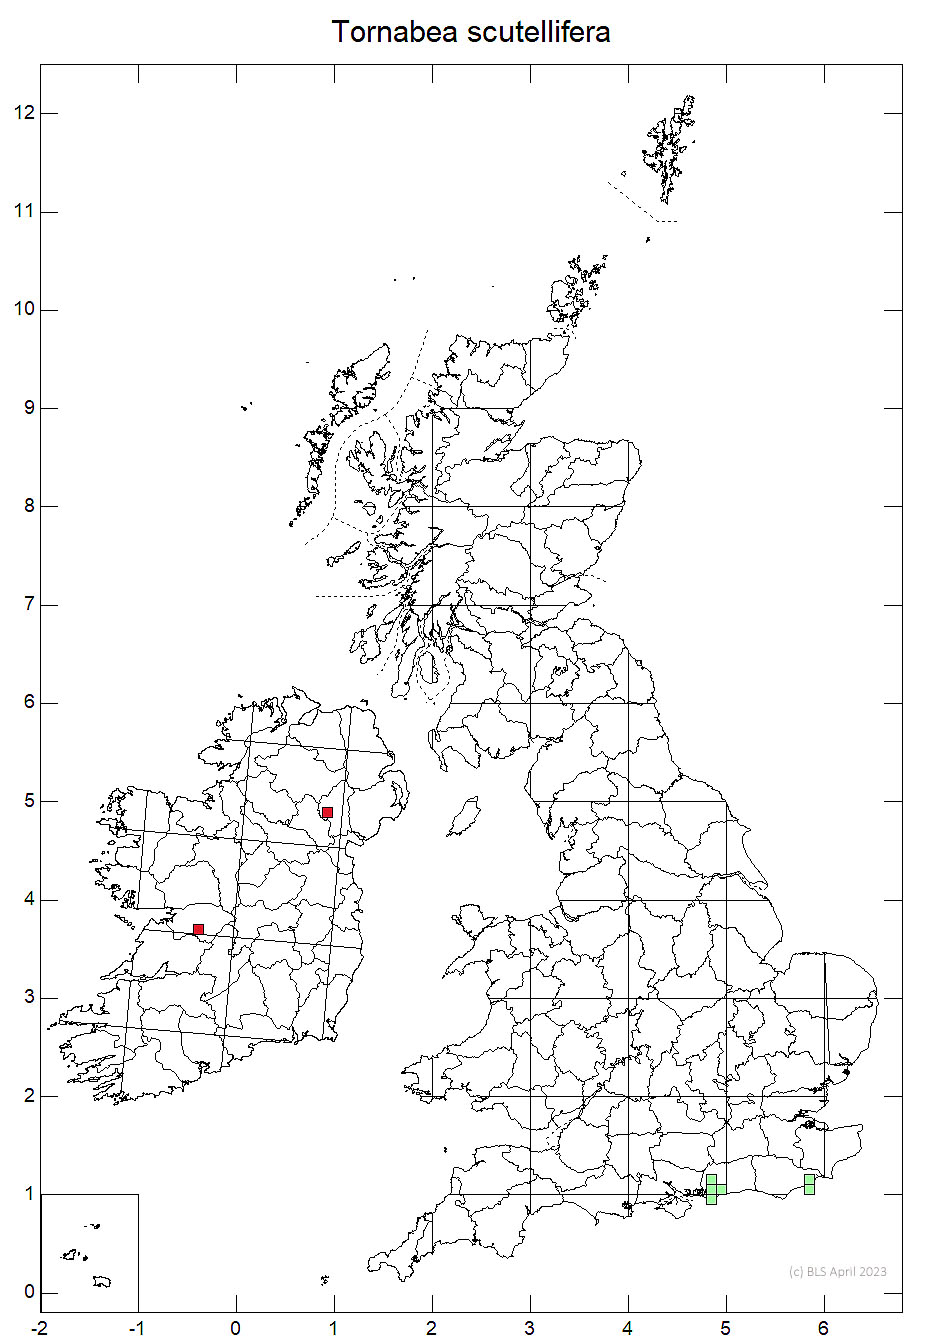 Tornabea scutellifera 10km sq distribution map